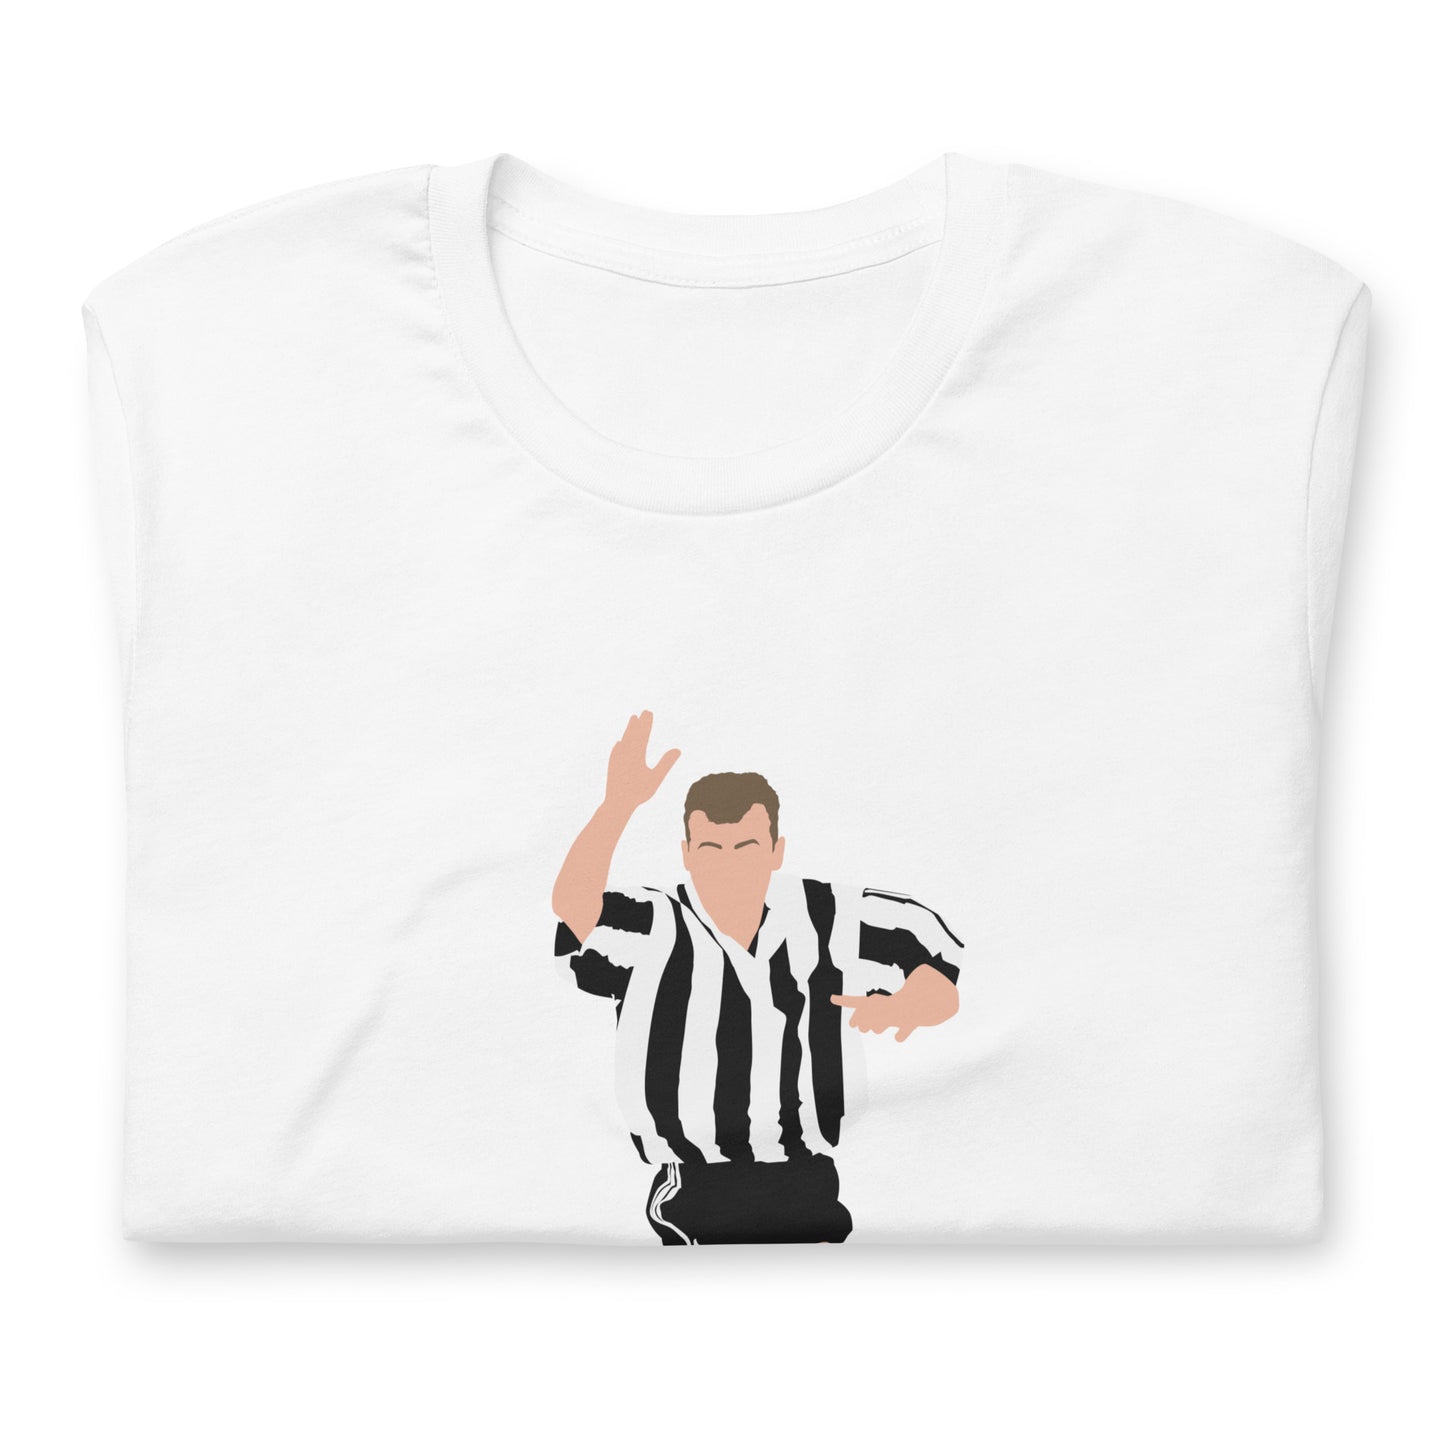 Alan Shearer T-Shirt